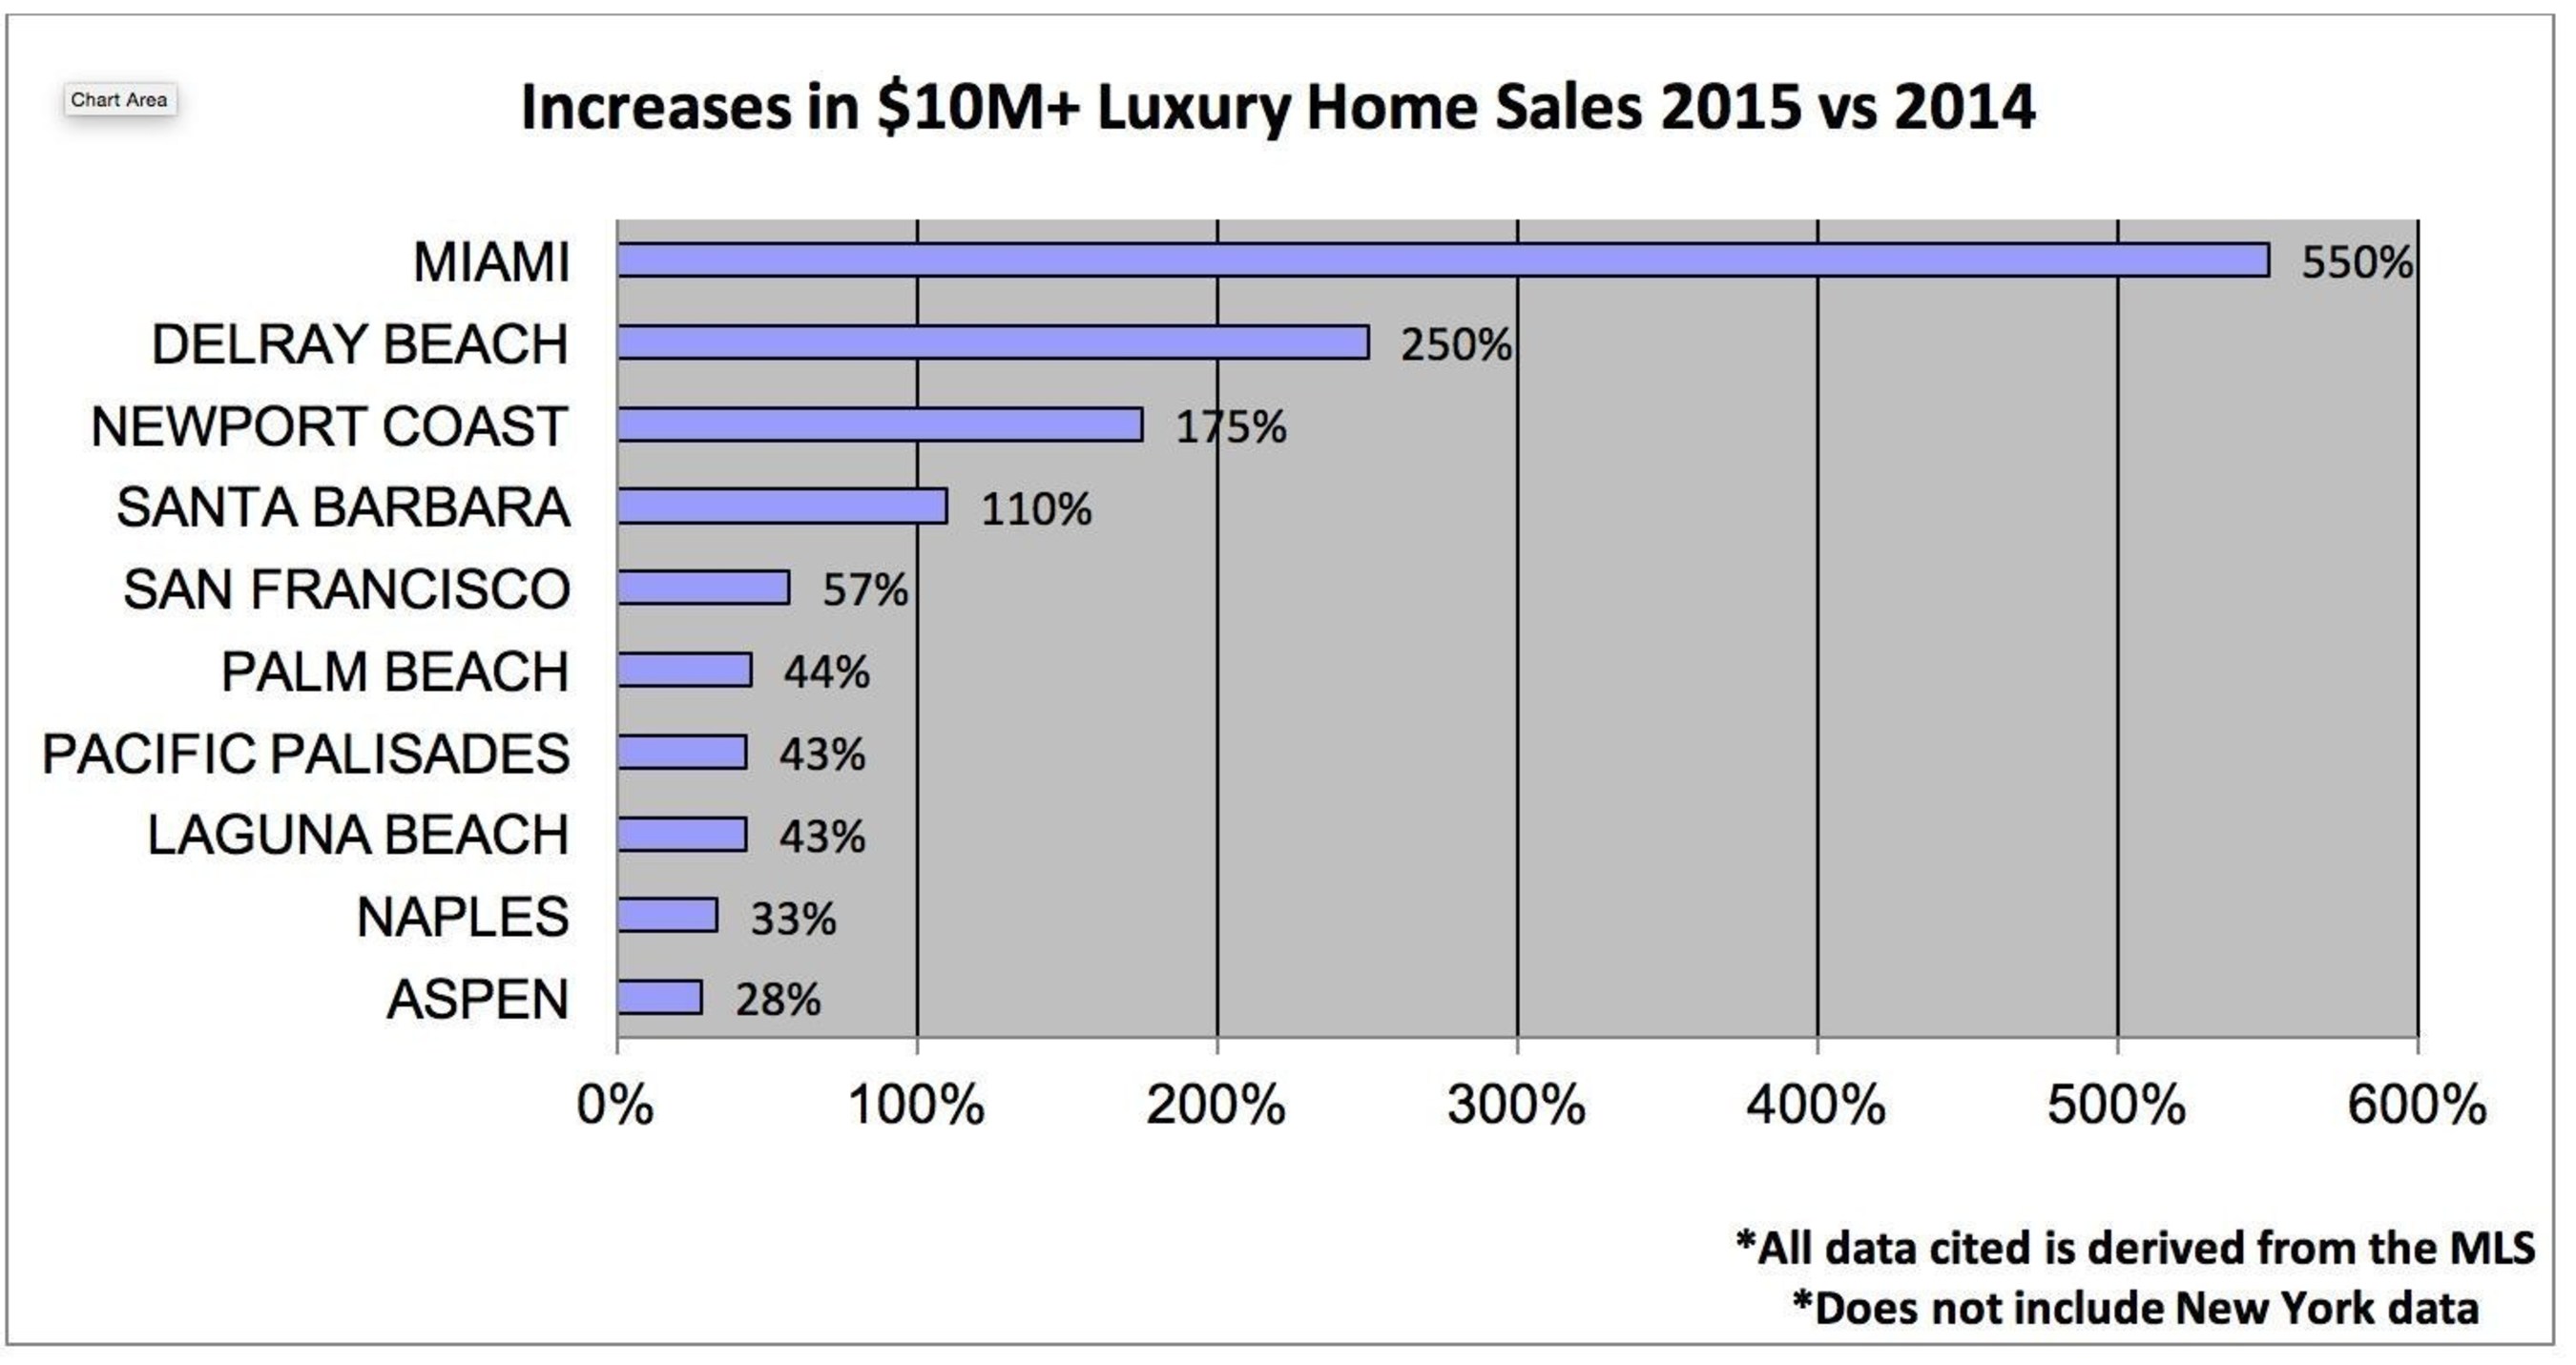 Increases in $10M+ Luxury Home Sales 2015 vs 2014